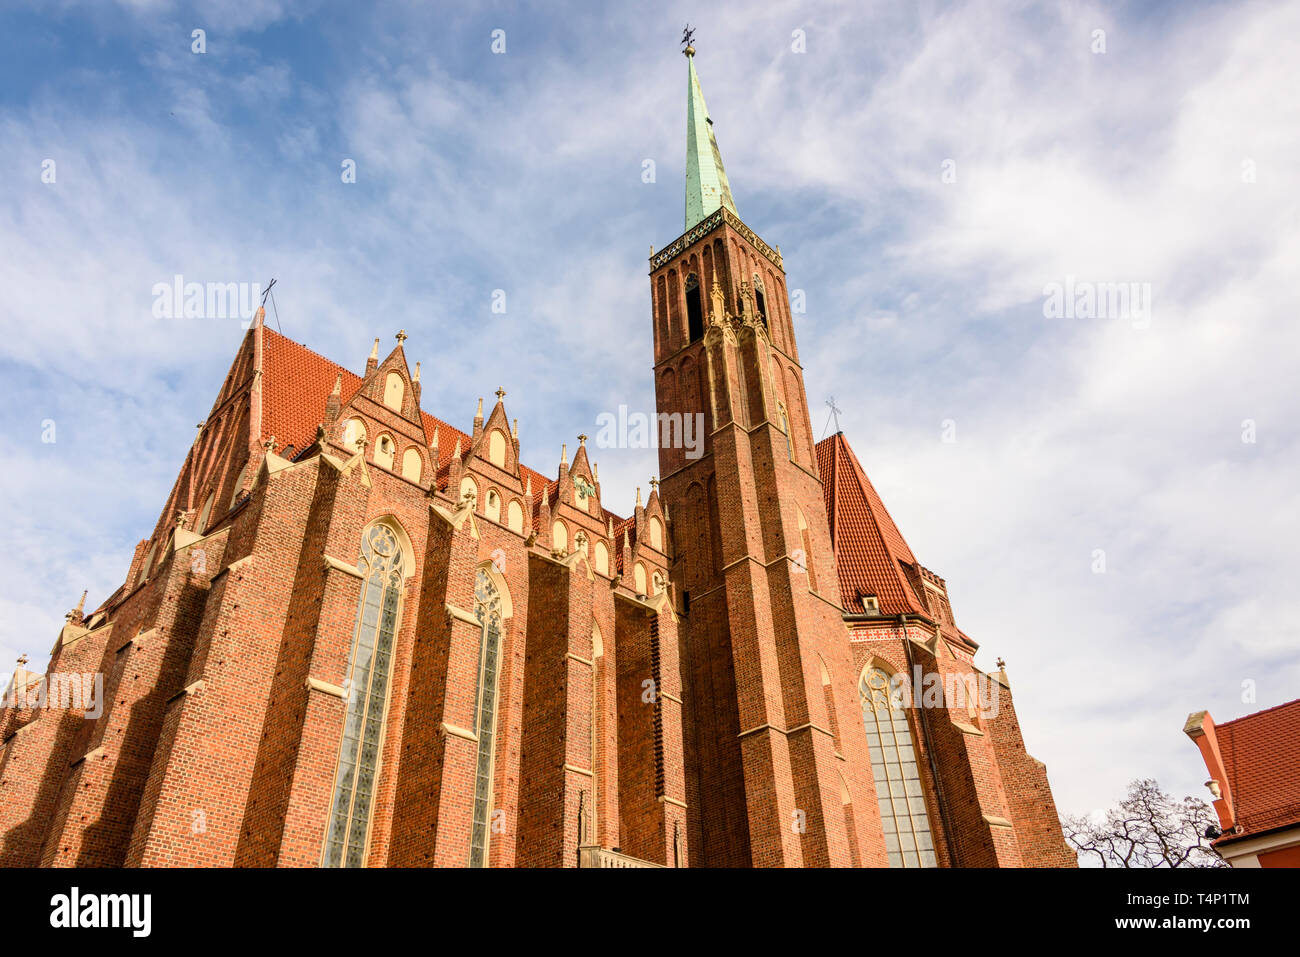 Kościół Rzymskokatolicki pw Świętego Krzyża, catholic church, Wrocław, Wroclaw, Wroklaw, Poland Stock Photo